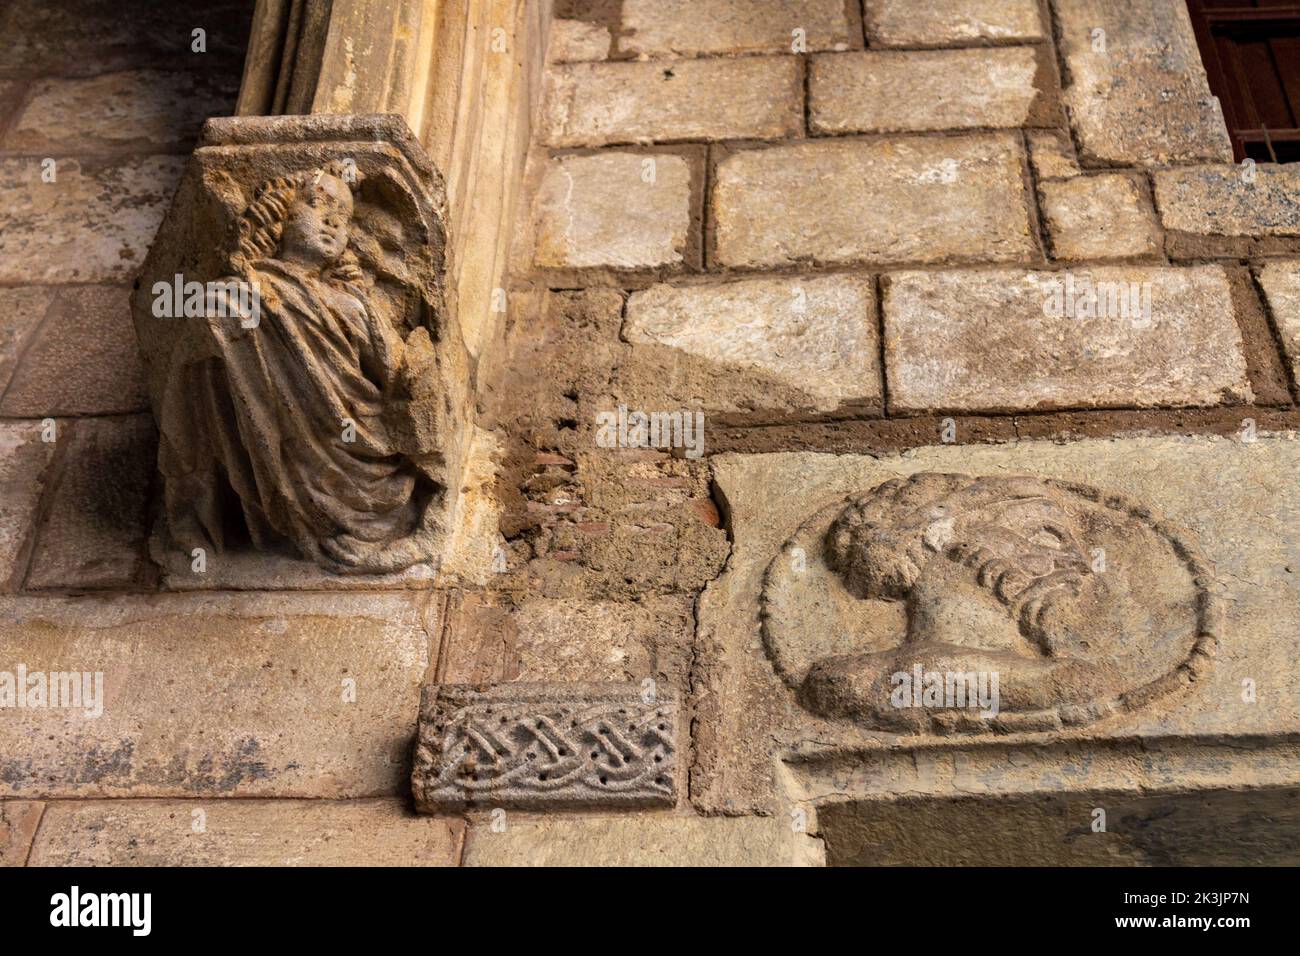 Le détail sur le mur en pierre du musée Picasso à Barcelone, Espagne Banque D'Images